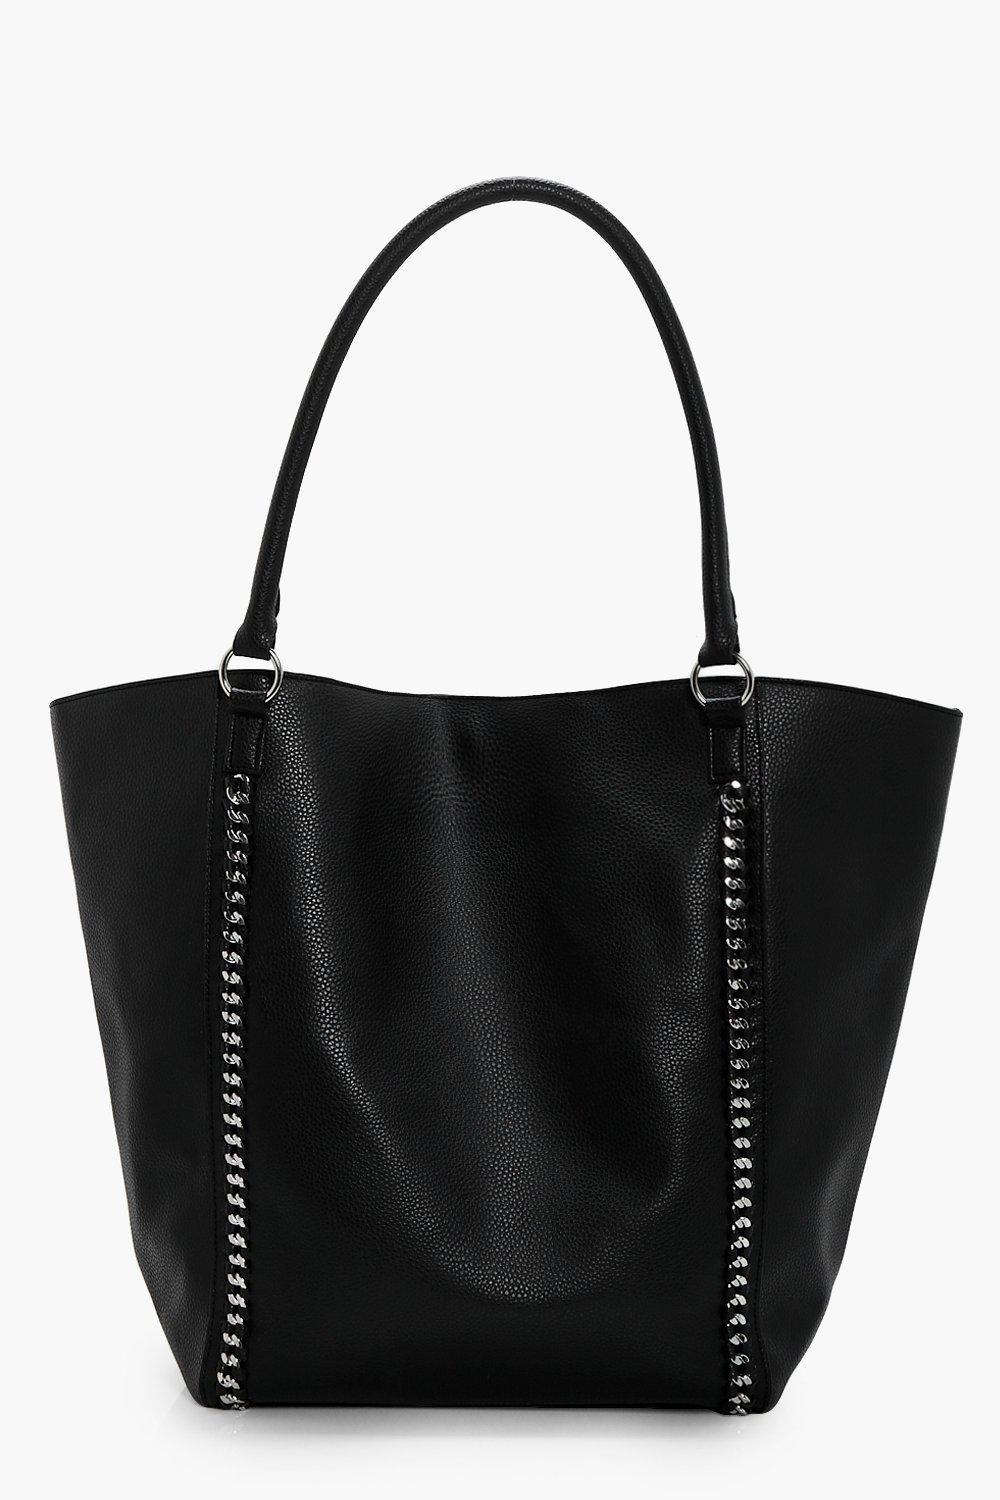 Boohoo Chain Detail Shopper Bag in Black - Lyst